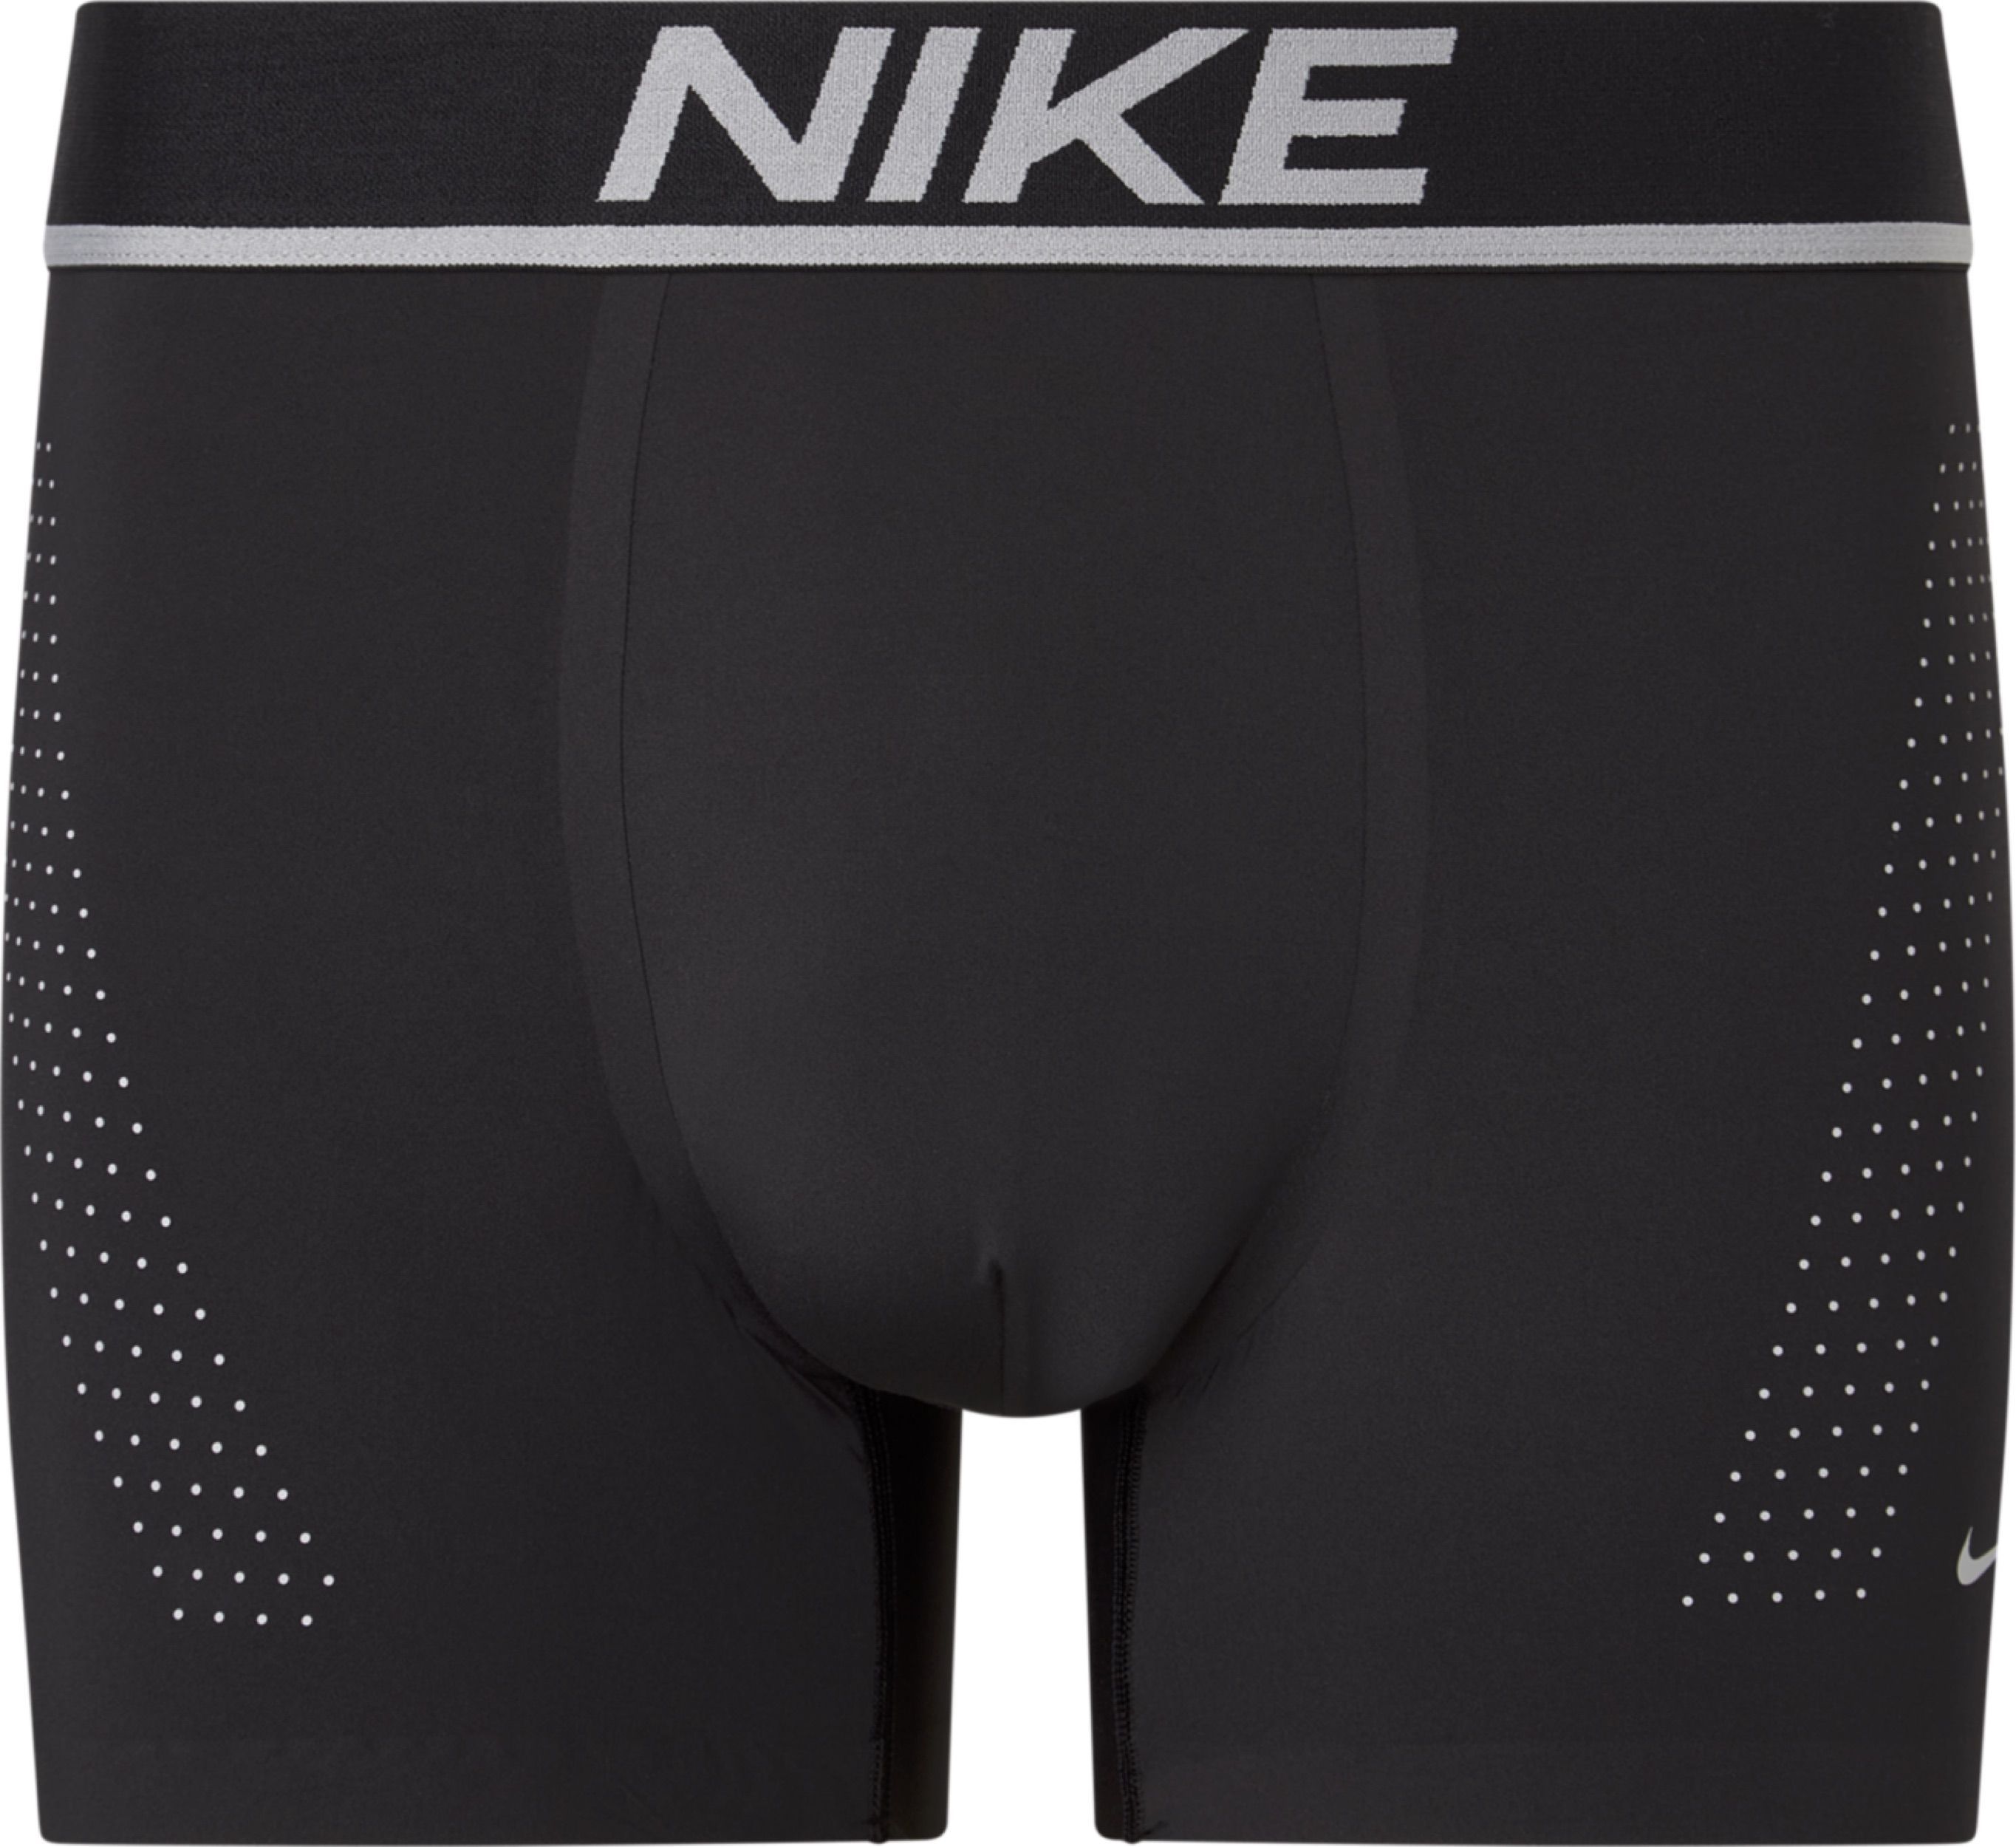 Nike Boxer Briefs Men's Small boxers New Underwear 3 pack flex micro ...